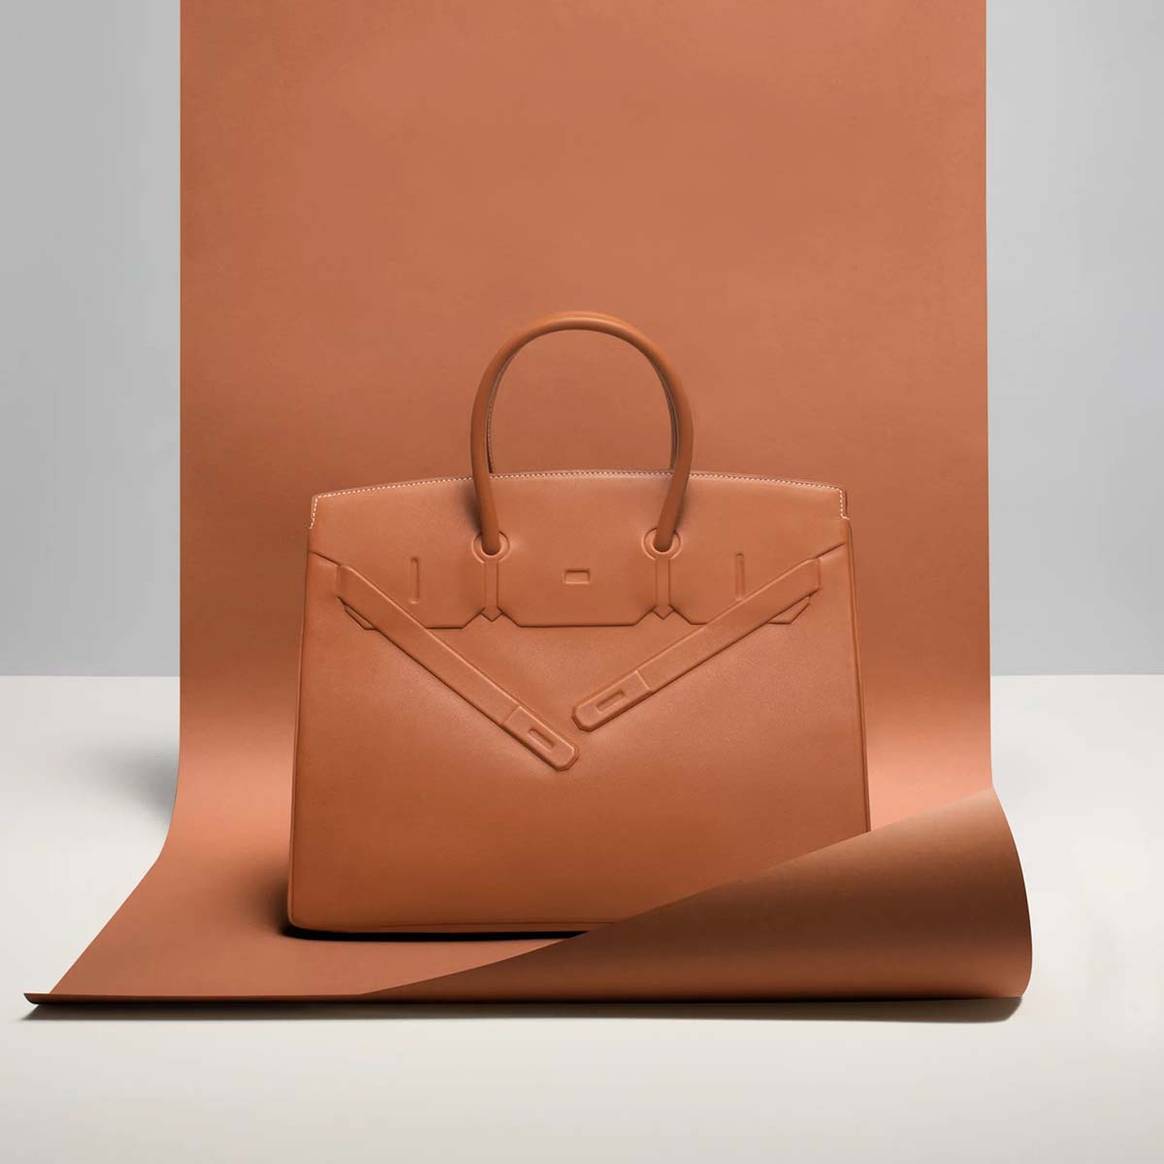 Birkin bag by Hermès